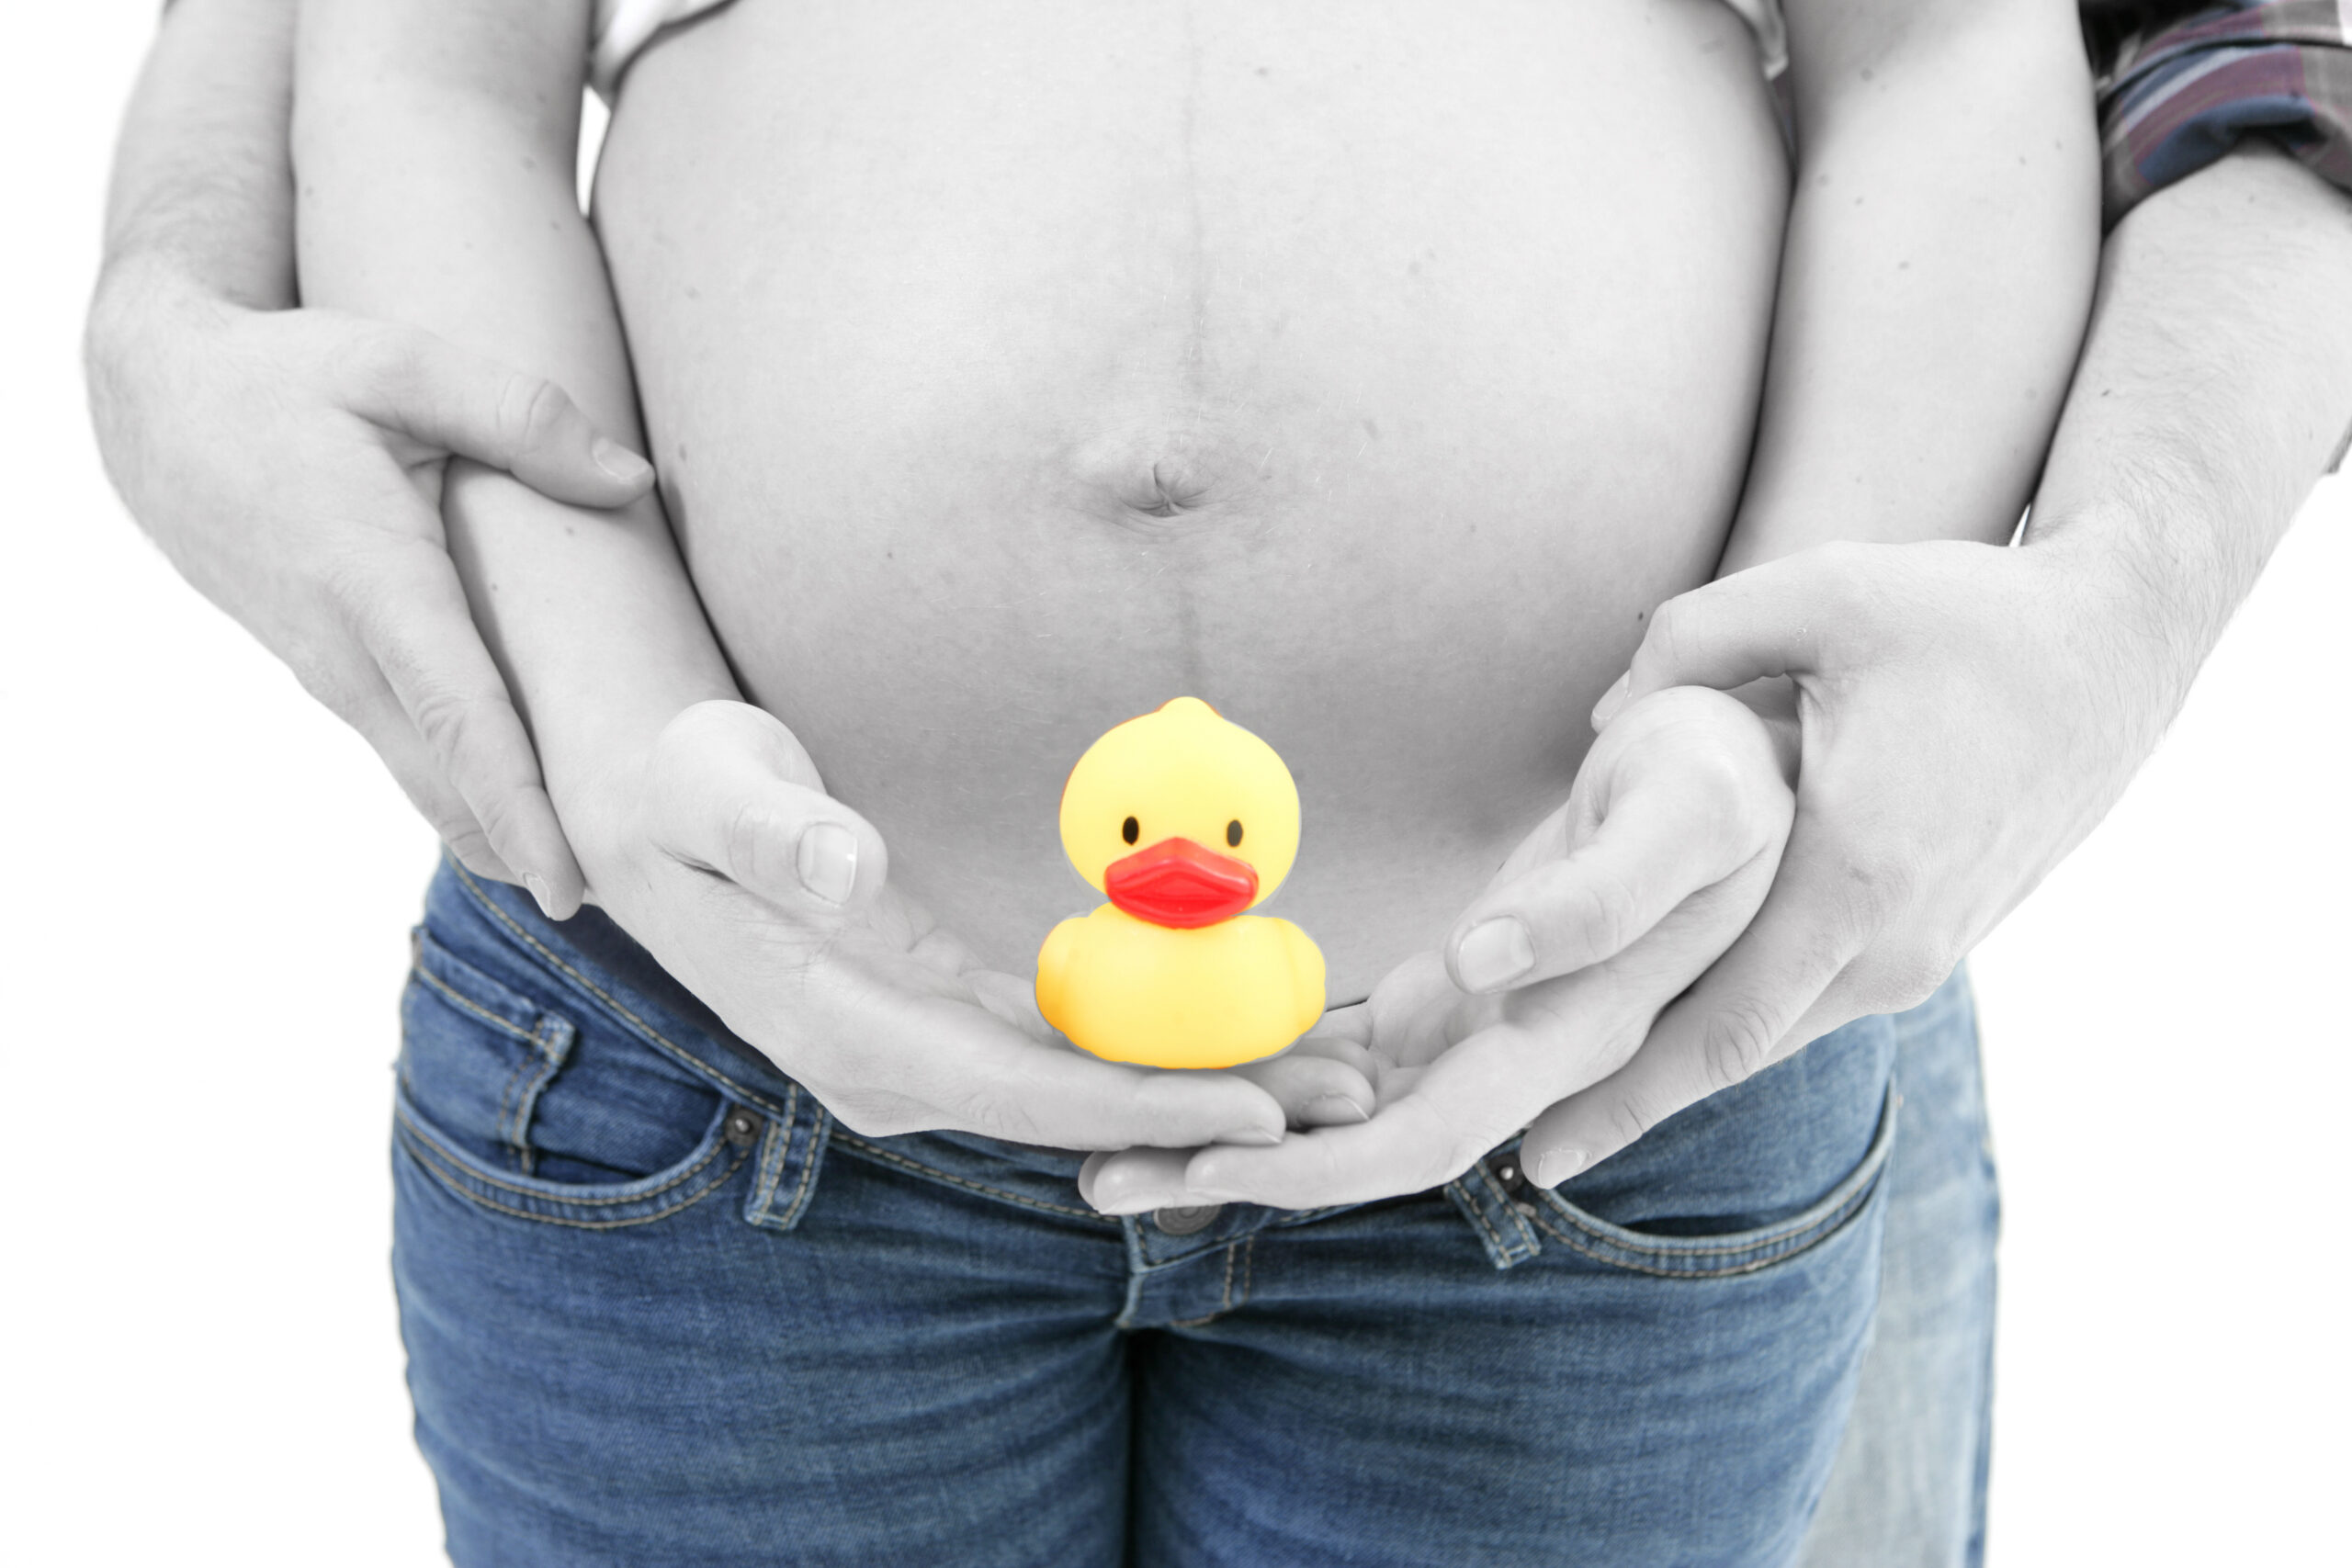 Schwangere Person mit entblößtem Bauch hält eine gelbe Gummiente, vor einem weißen Hintergrund